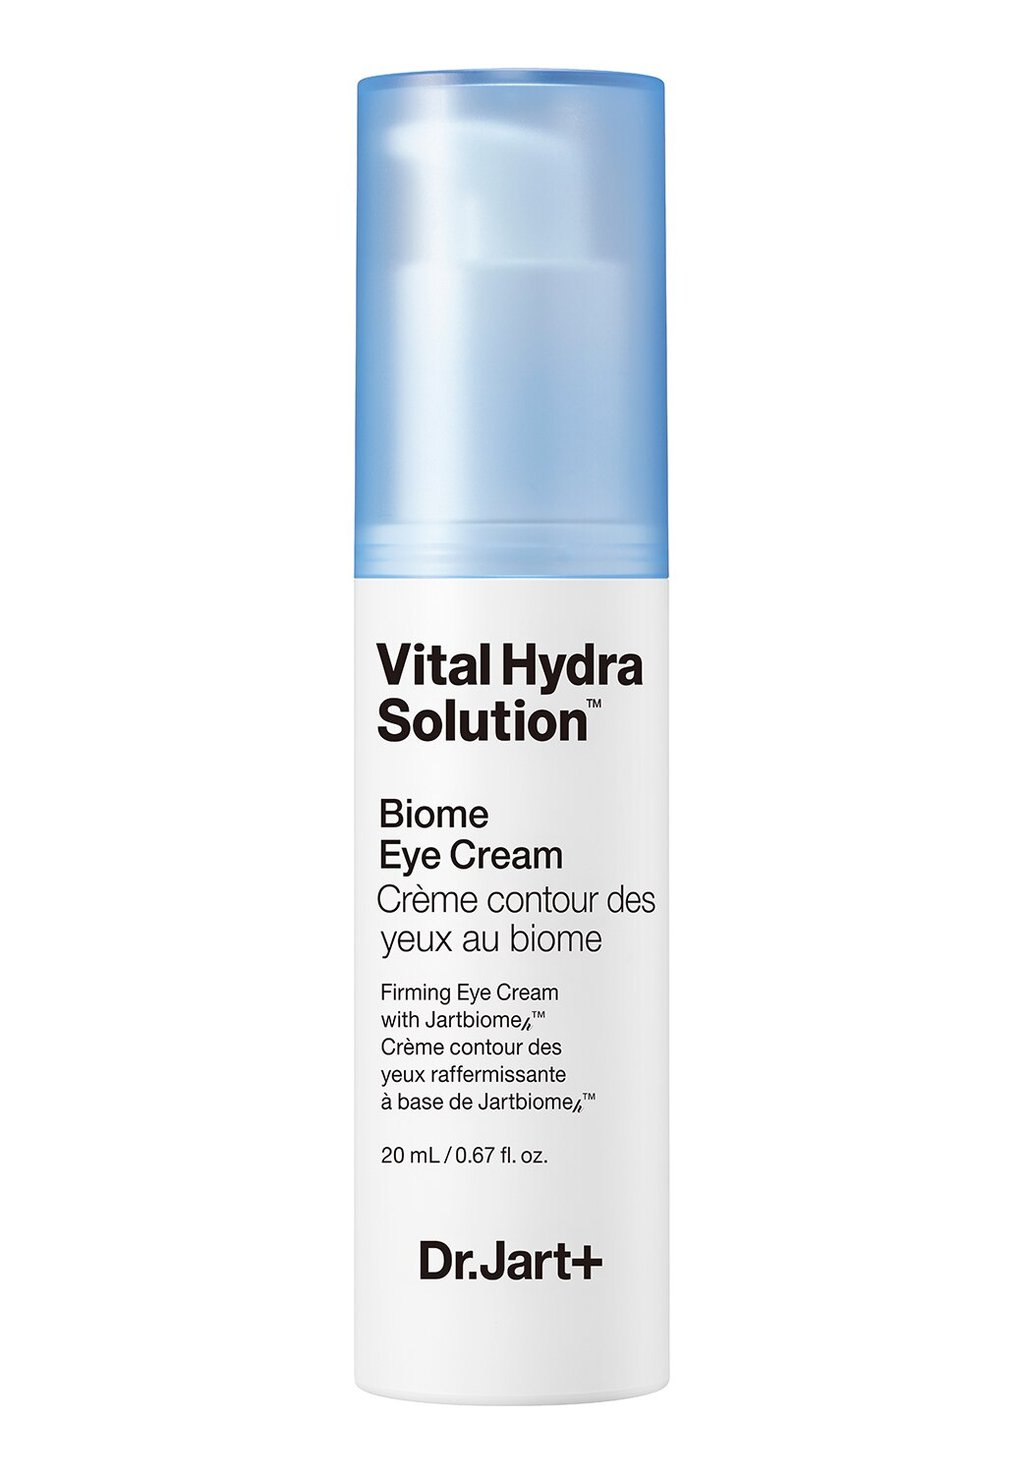 Уход за глазами Vital Hydra Solution Biome Eye Cream Dr. Jart+